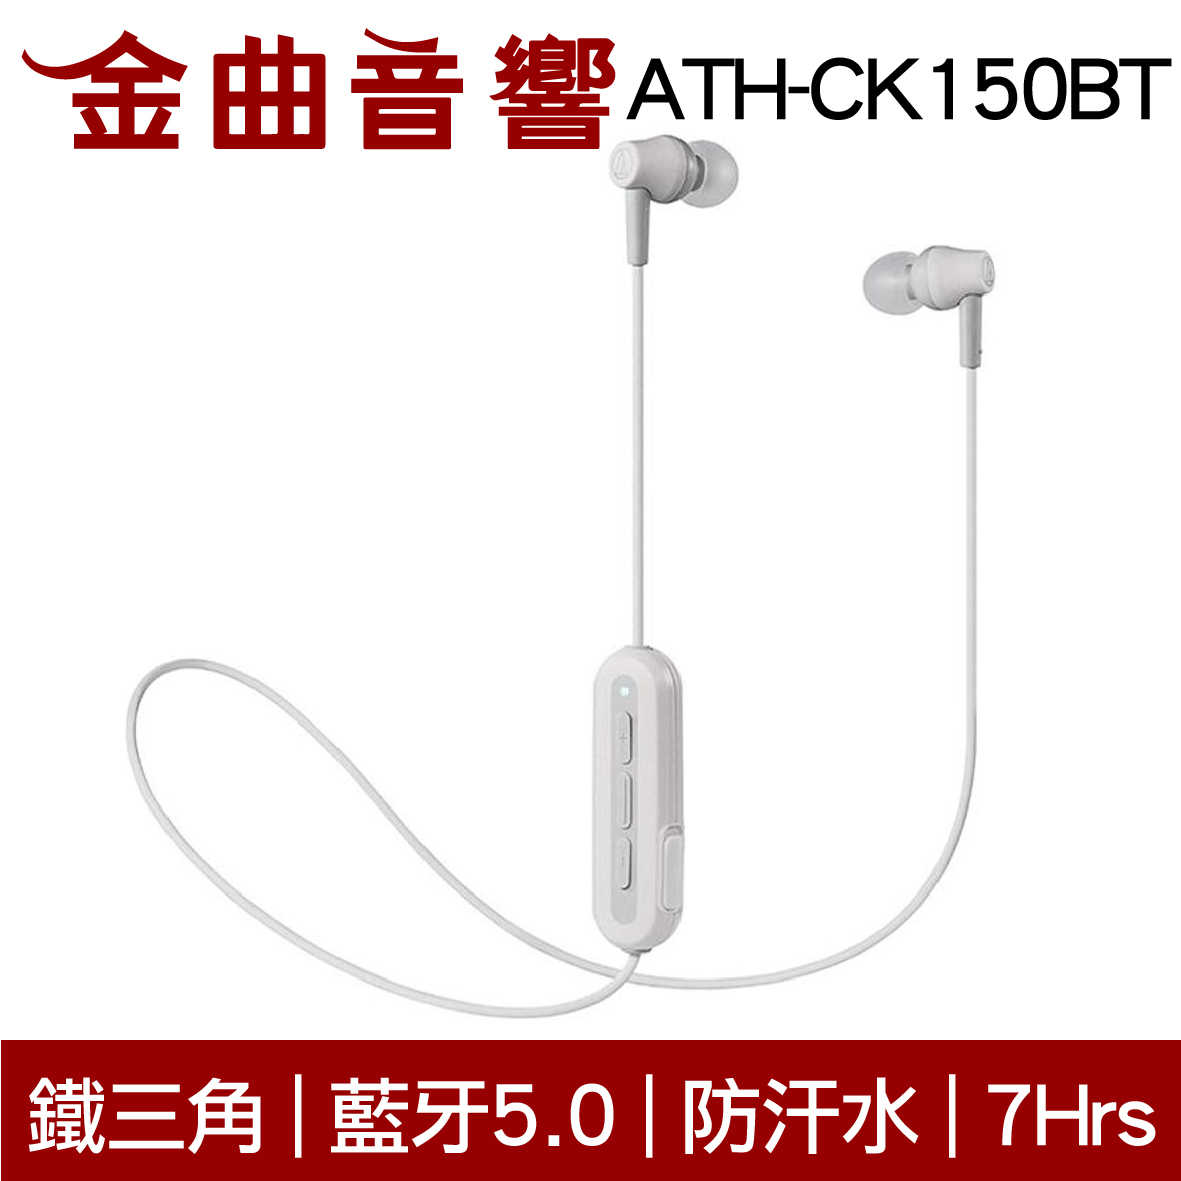 鐵三角 ATH-CK150BT 狂熱色 可通話 無線 藍牙 耳道式耳機 | 金曲音響